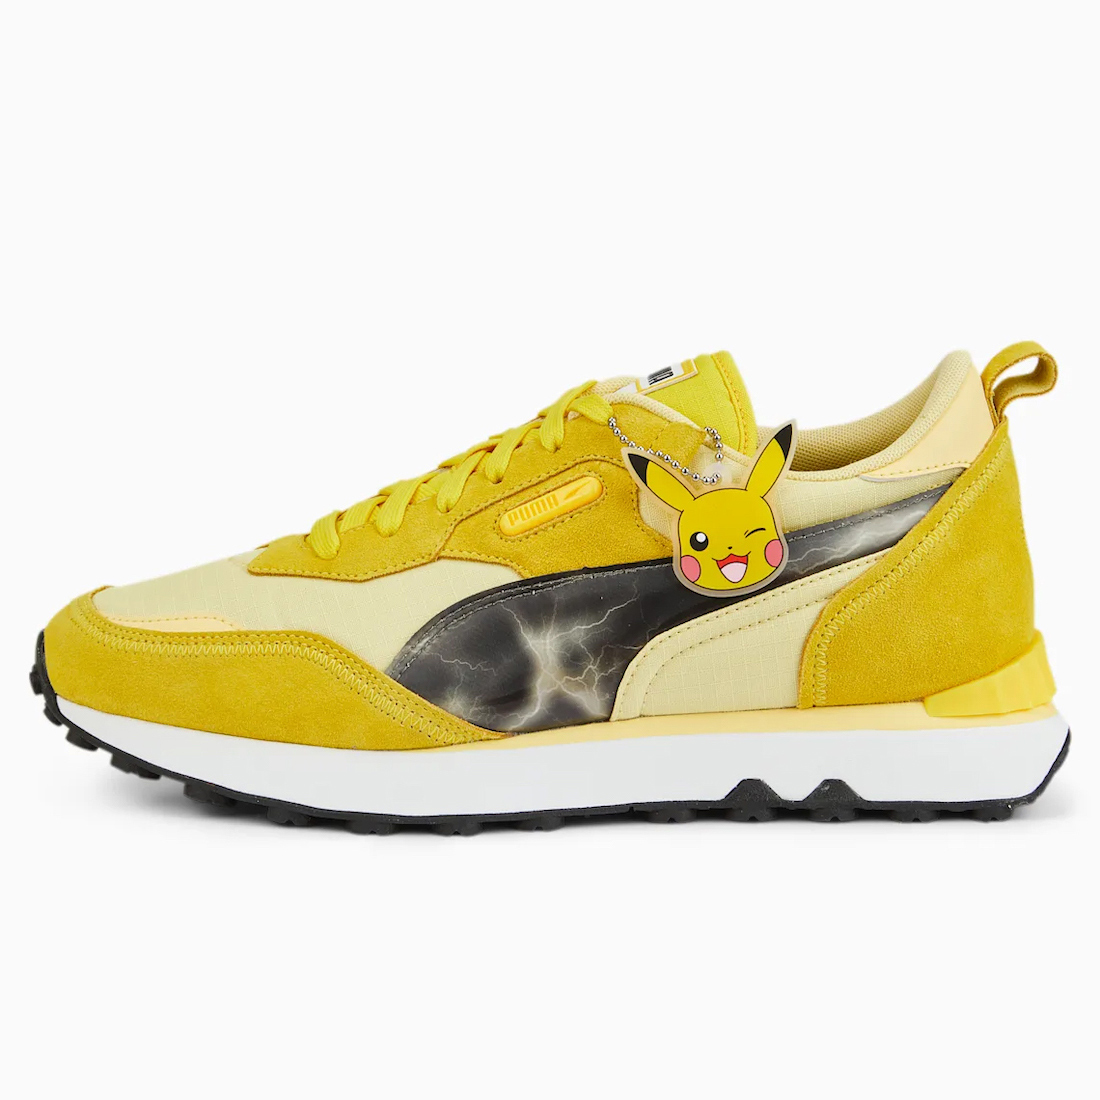 Pokémon x PUMA Rider FV “Pikachu” 387688-01